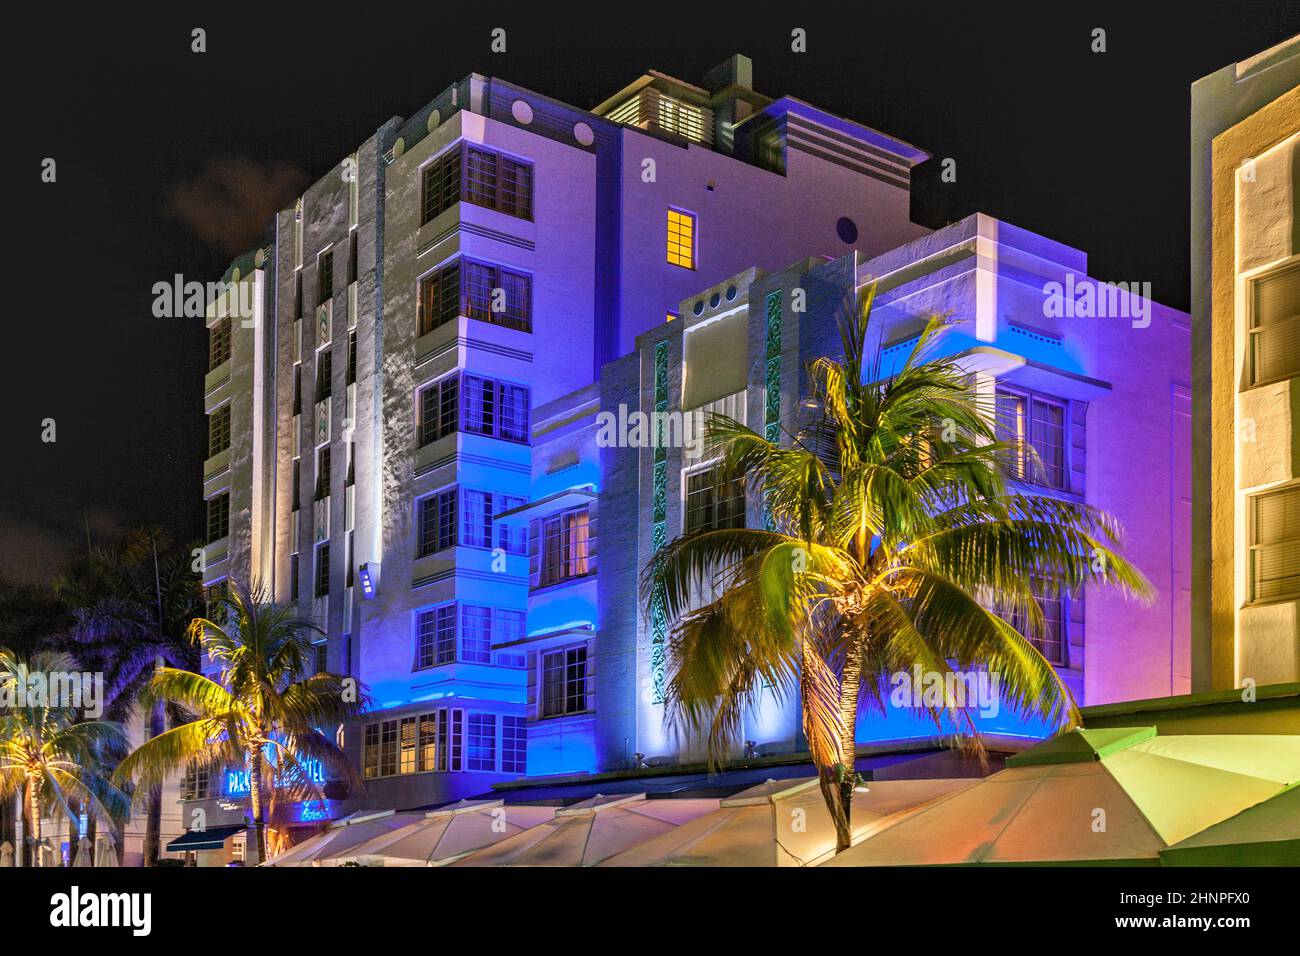 MIAMI BEACH, USA - 3. AUG 2010: Nachtansicht am Ocean Drive in Miami Beach, Florida. Das Art déco-Nachtleben in South Beach ist eine der wichtigsten Touristenattraktionen in Miami. Stockfoto